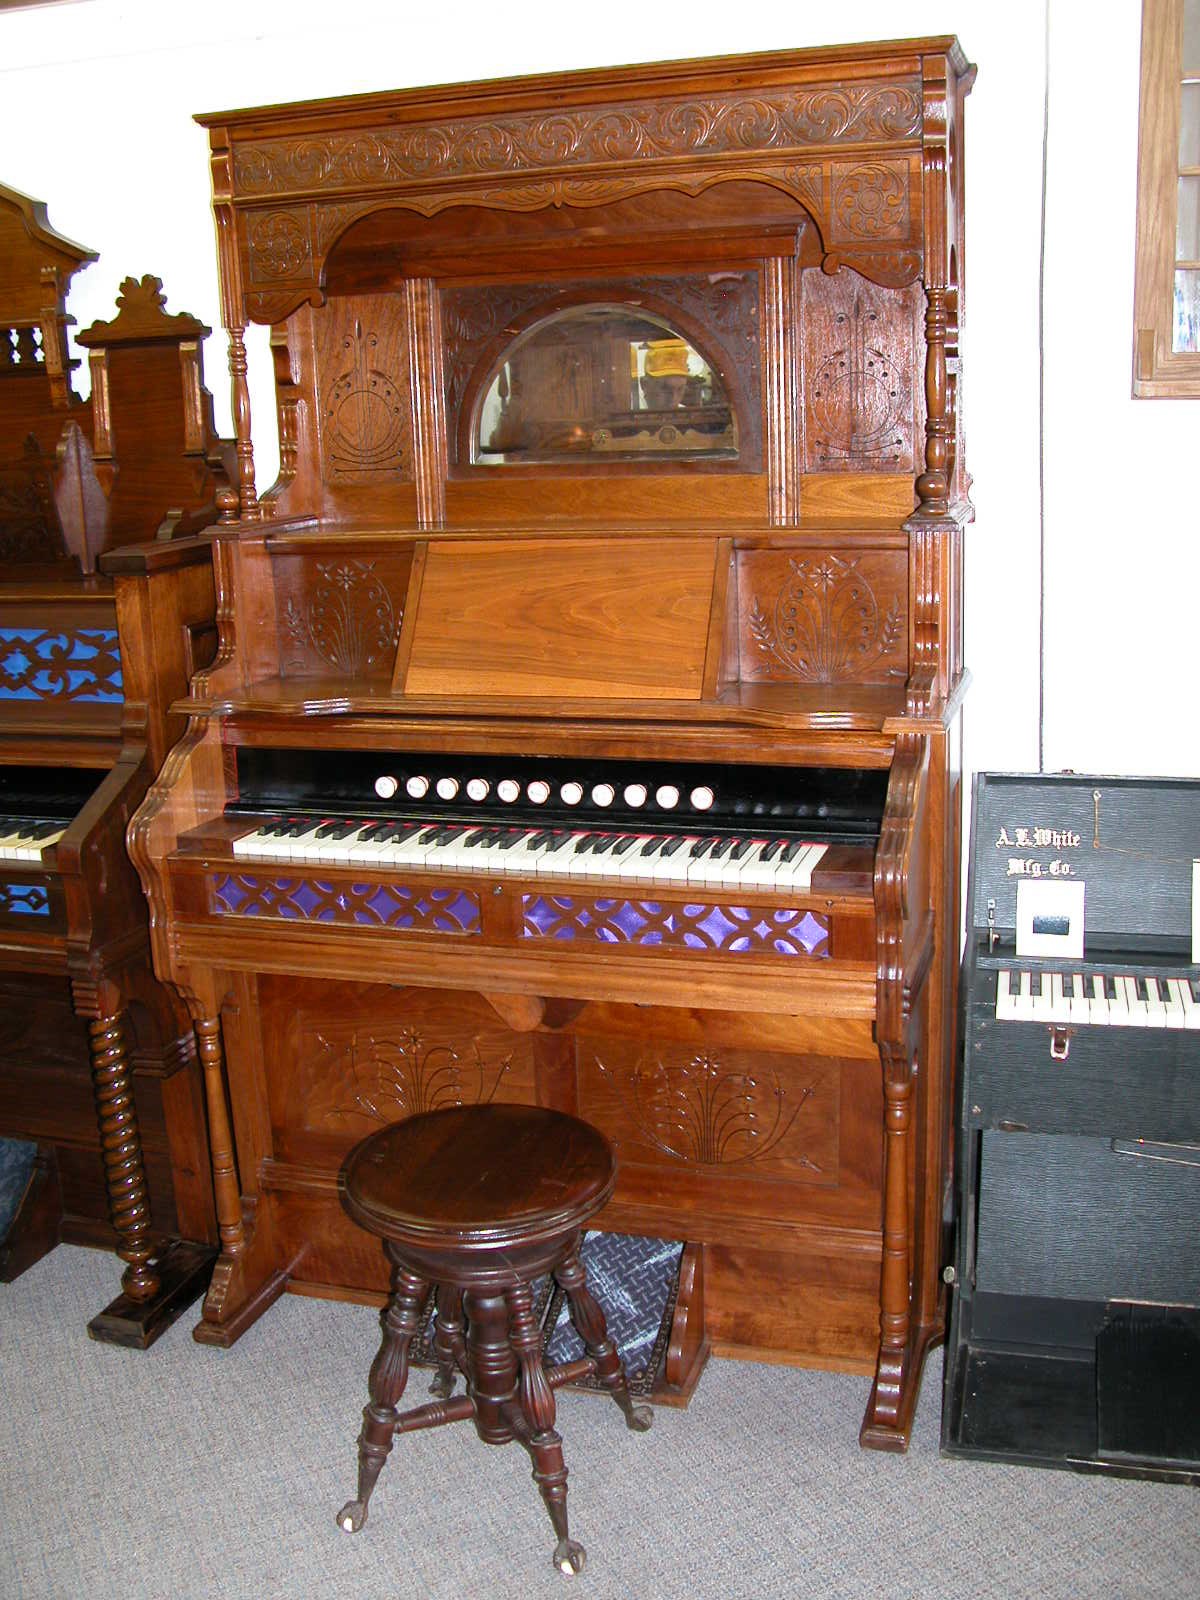 1899 Story & Clark Organ Co. I.D. No. #52